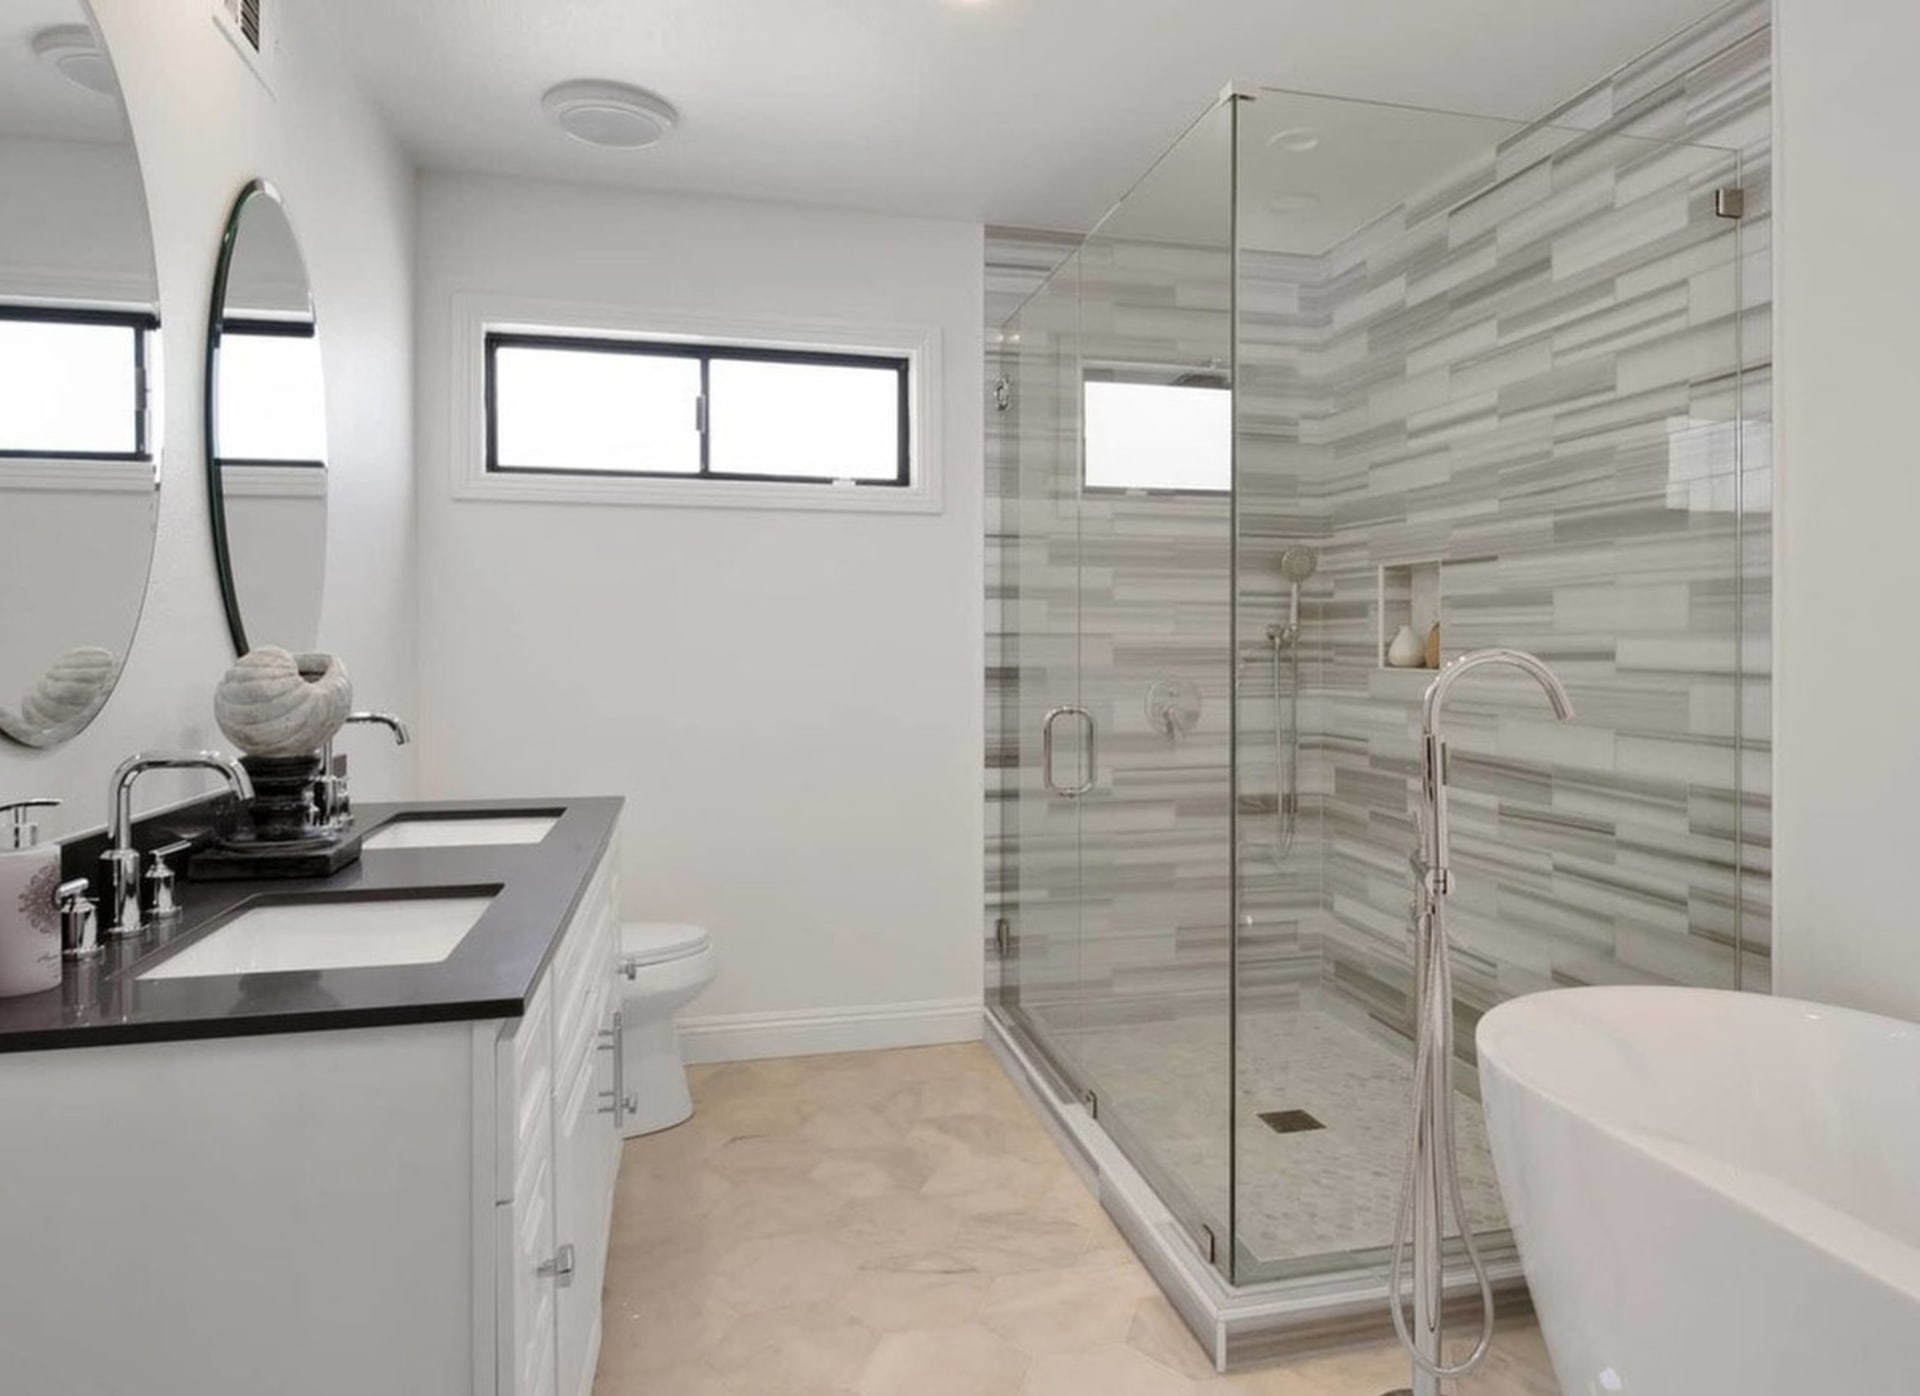 V soukromé koupelně je sprchový kout, porcelánová vana a dvě umyvadla.